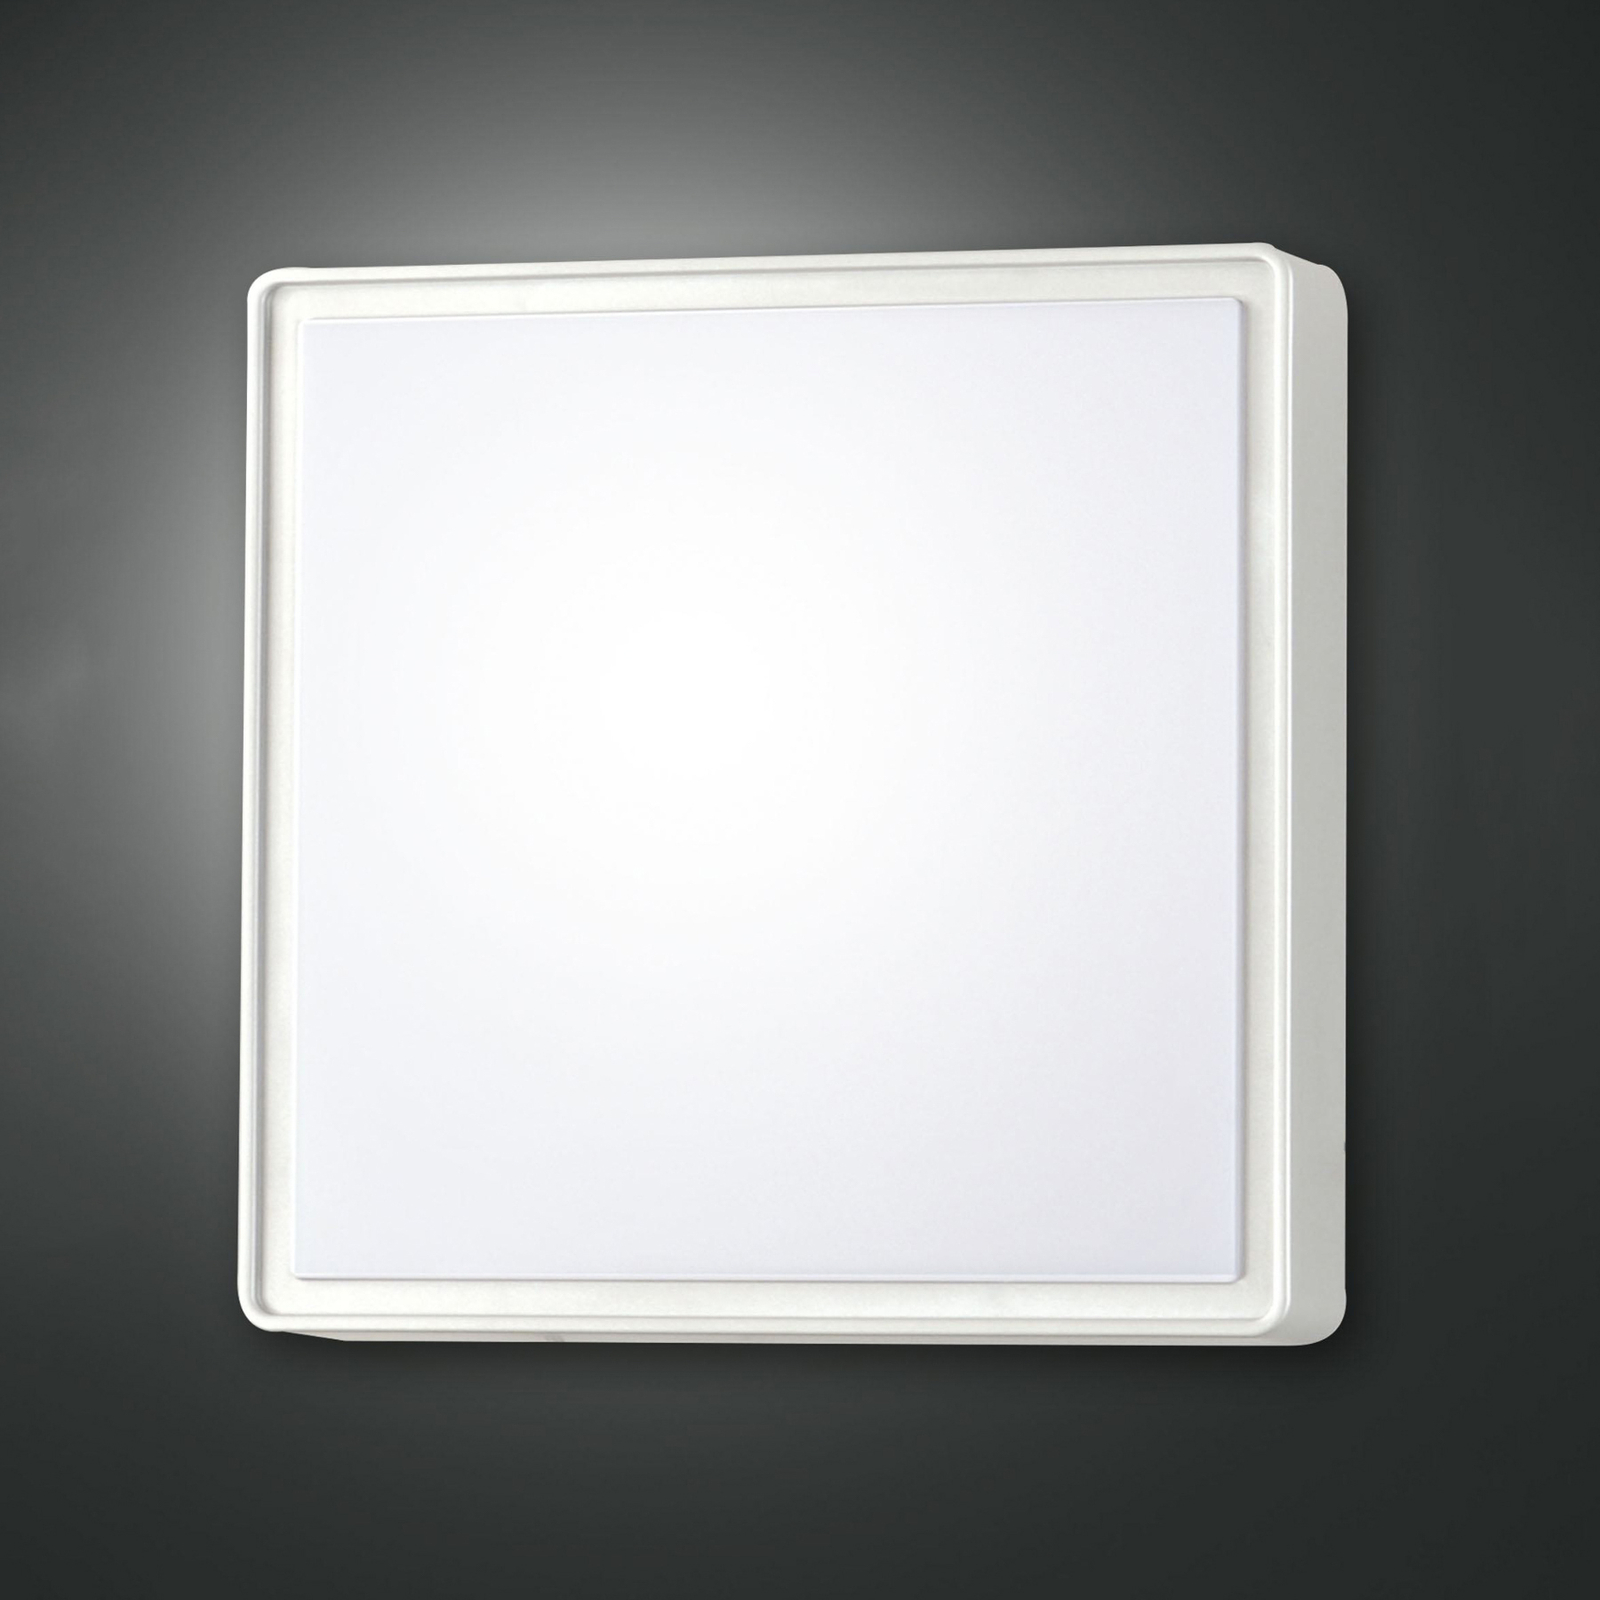 Φωτιστικό τοίχου Oban, 30 cm x 30 cm, 2 x E27, λευκό, IP65